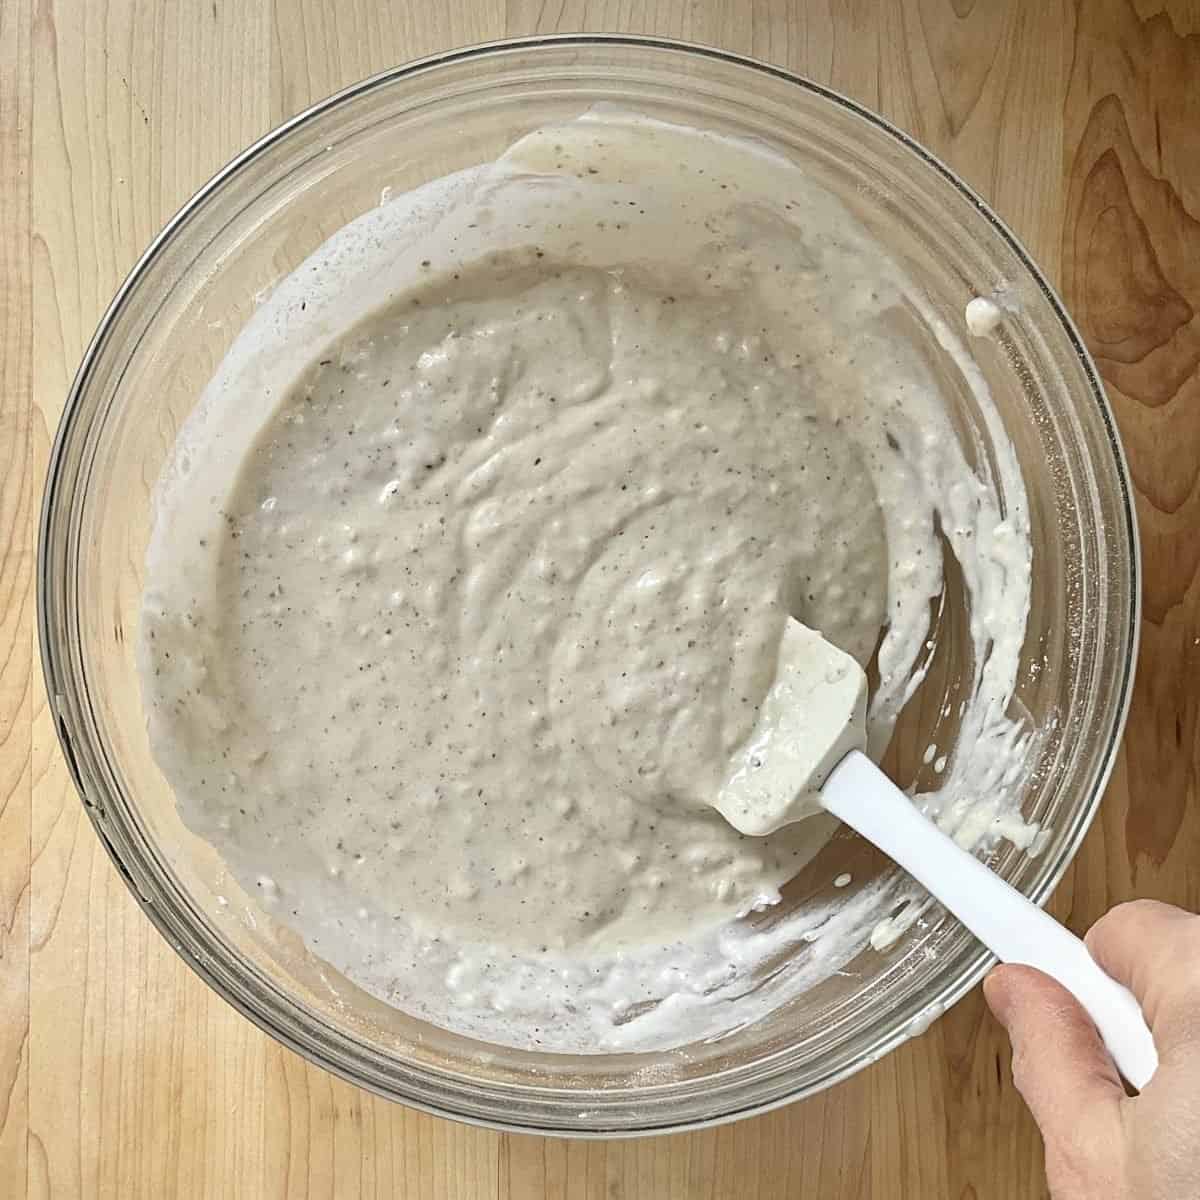 Mini pancake batter in a mixing bowl.